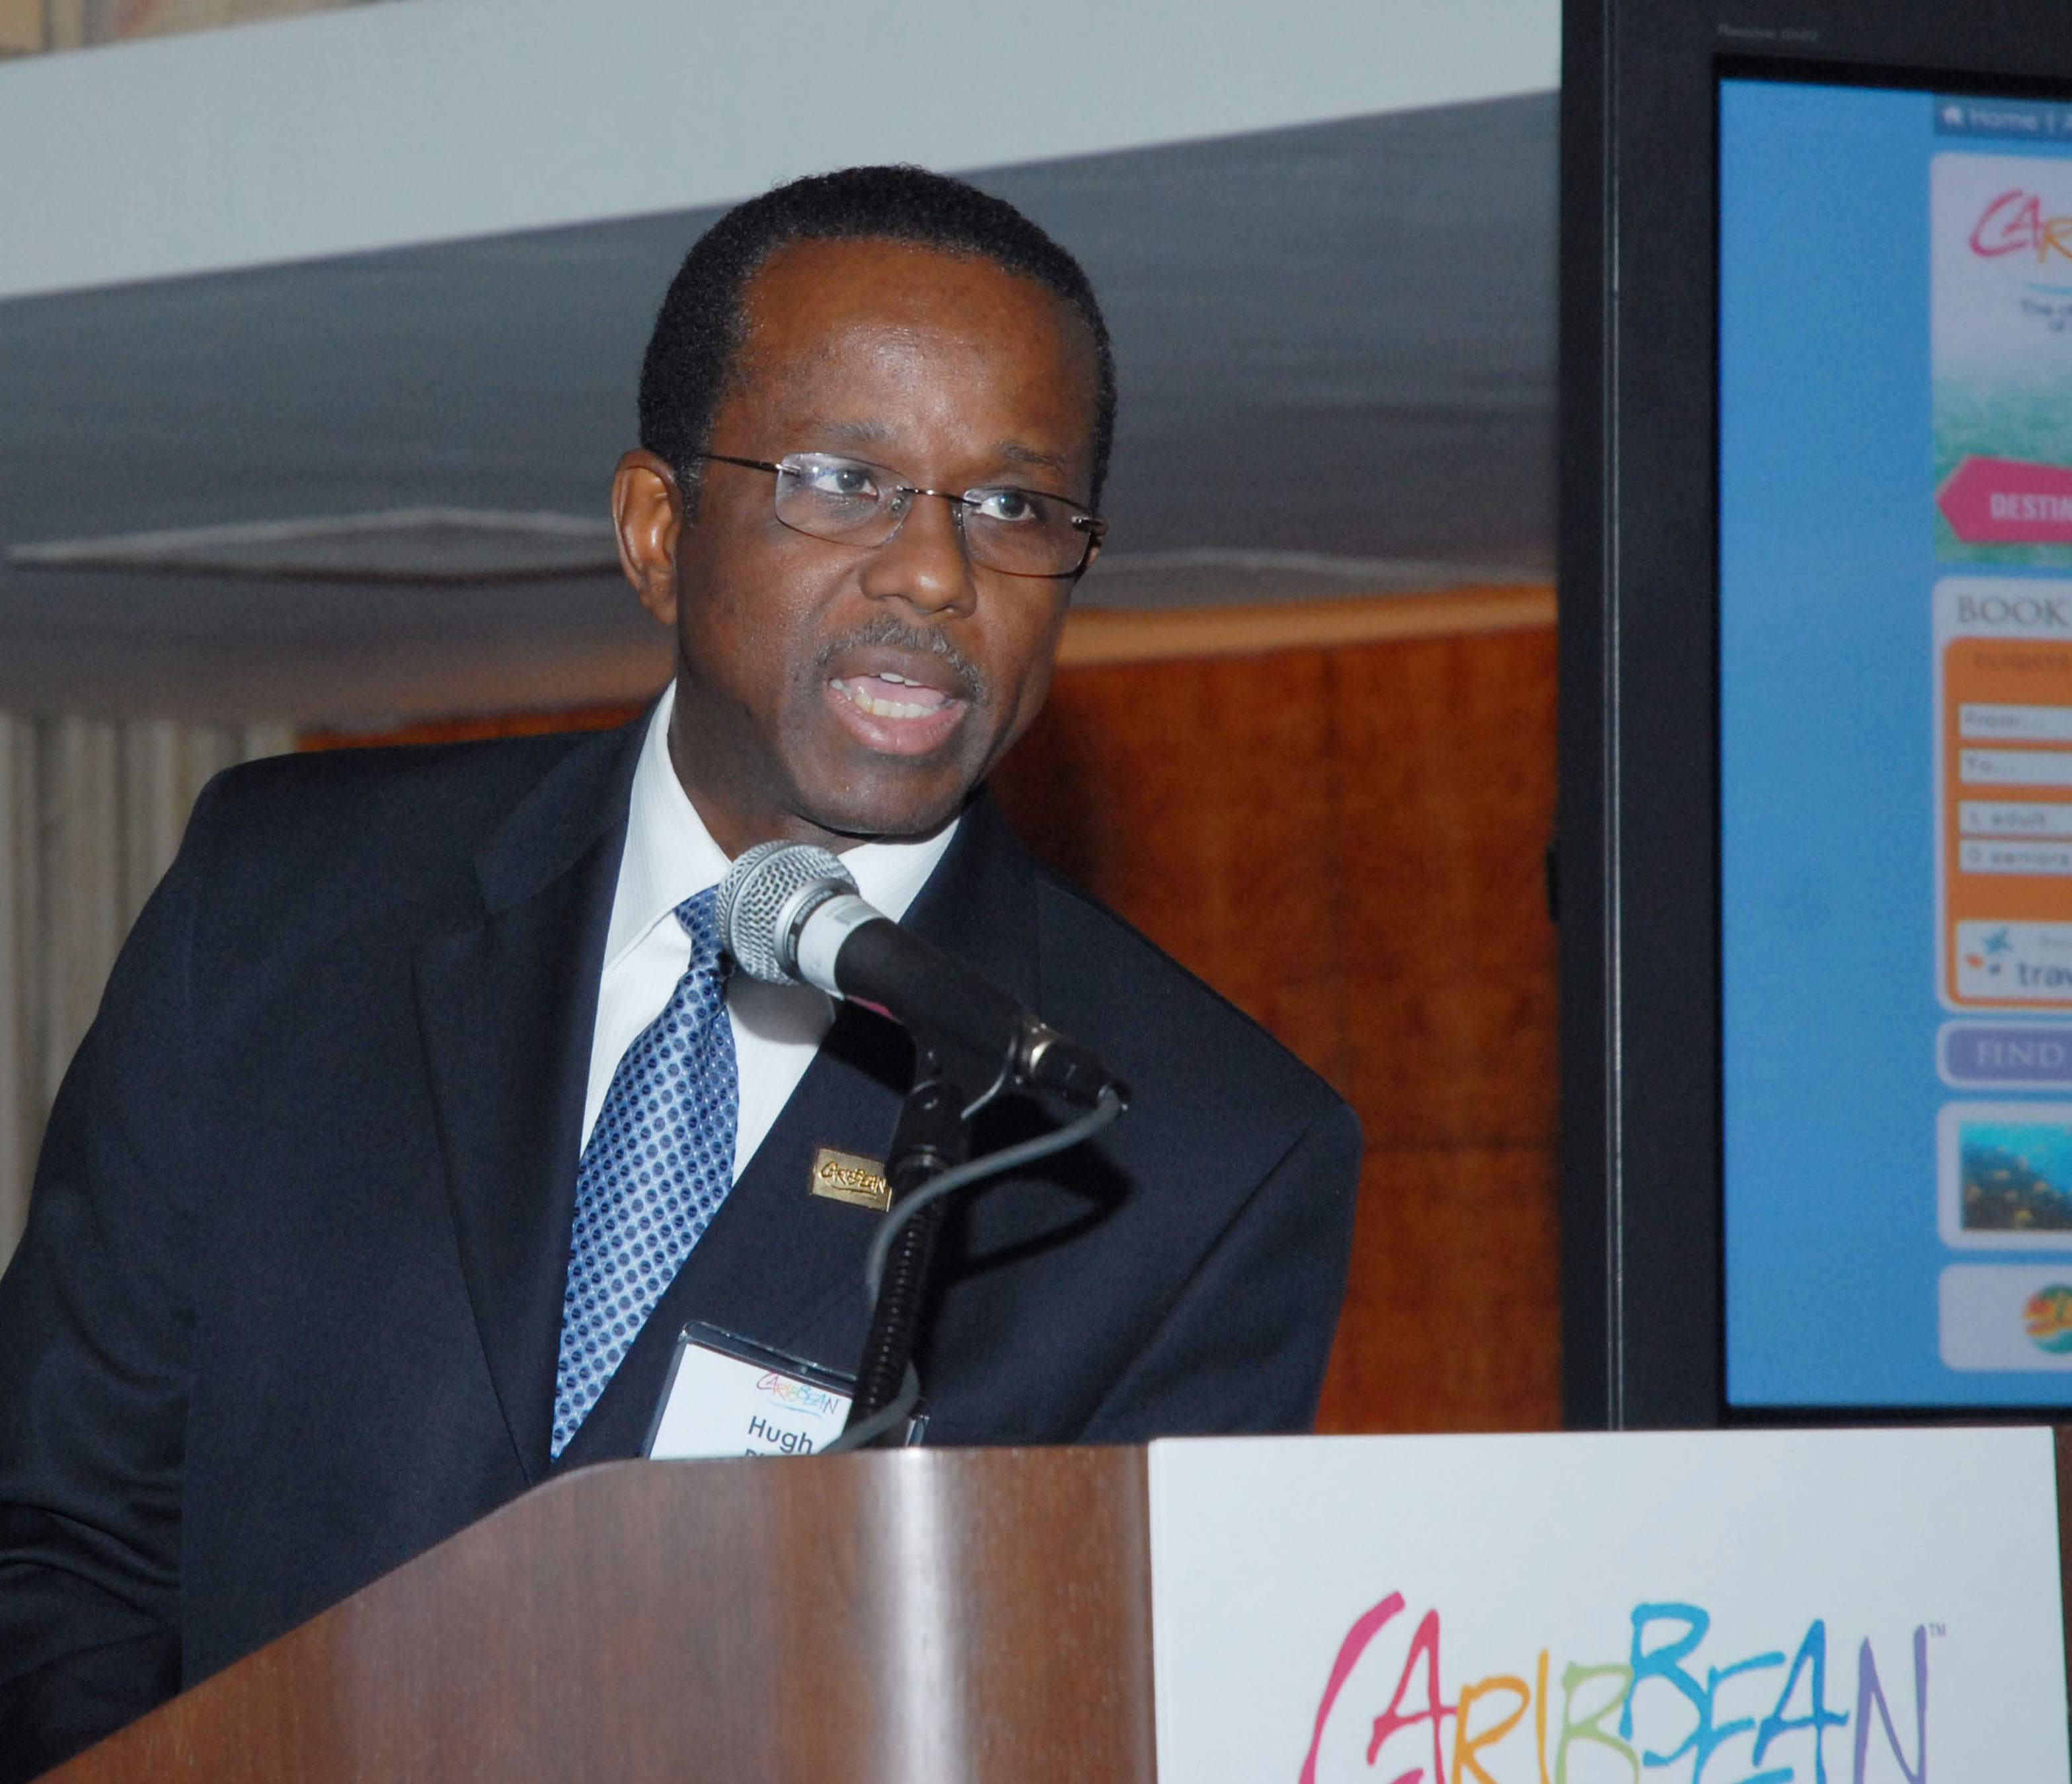 Segnali positivi dai Carabi. Il messaggio di Hugh Riley, Segretario Generale  ad Interim di Caribbean Tourism Organization